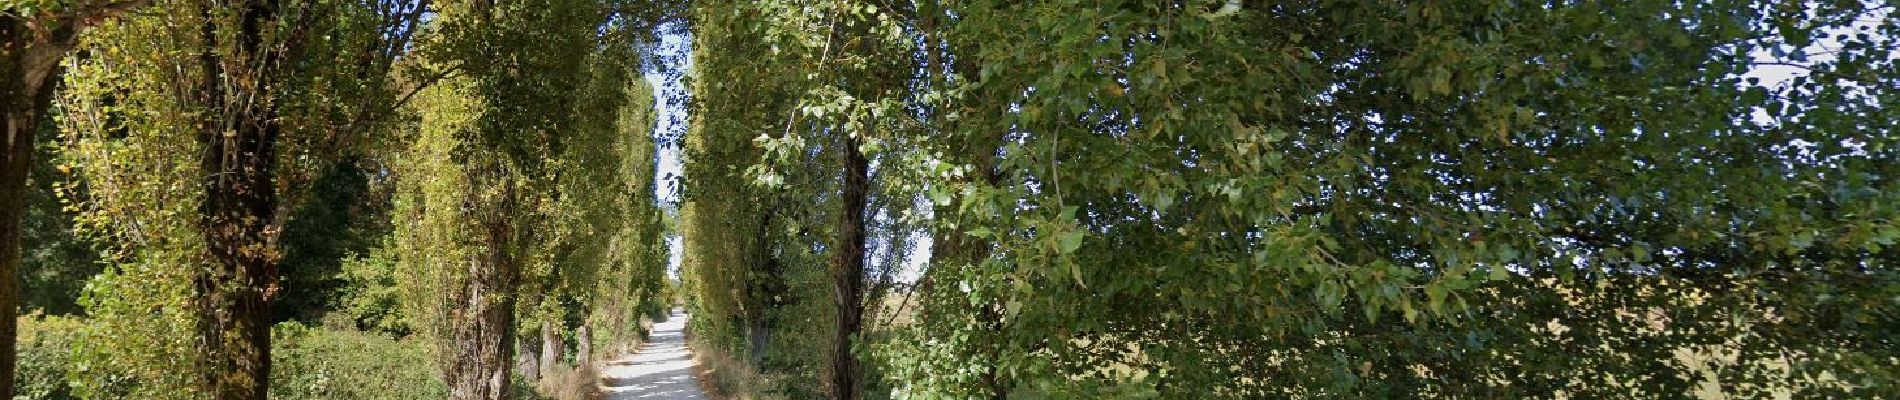 POI Saint-André-de-Cubzac - belle allée bordée d'arbres - Photo